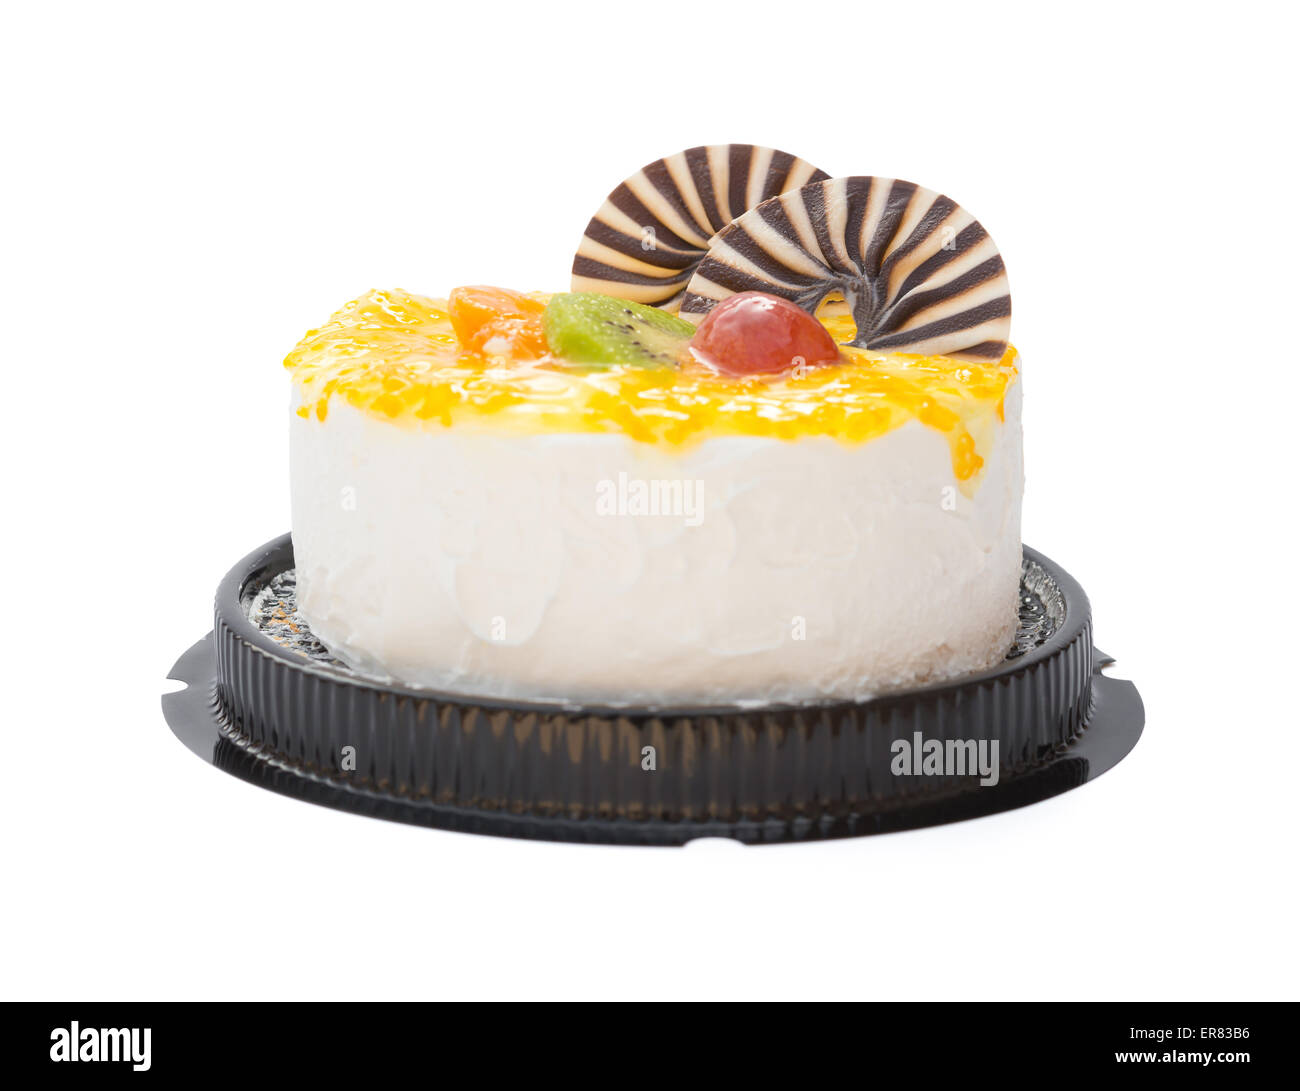 leckeren Kuchen auf weiß mit Traube orange Kiwi und Schokolade am besten, Clipping-Pfad enthalten Stockfoto